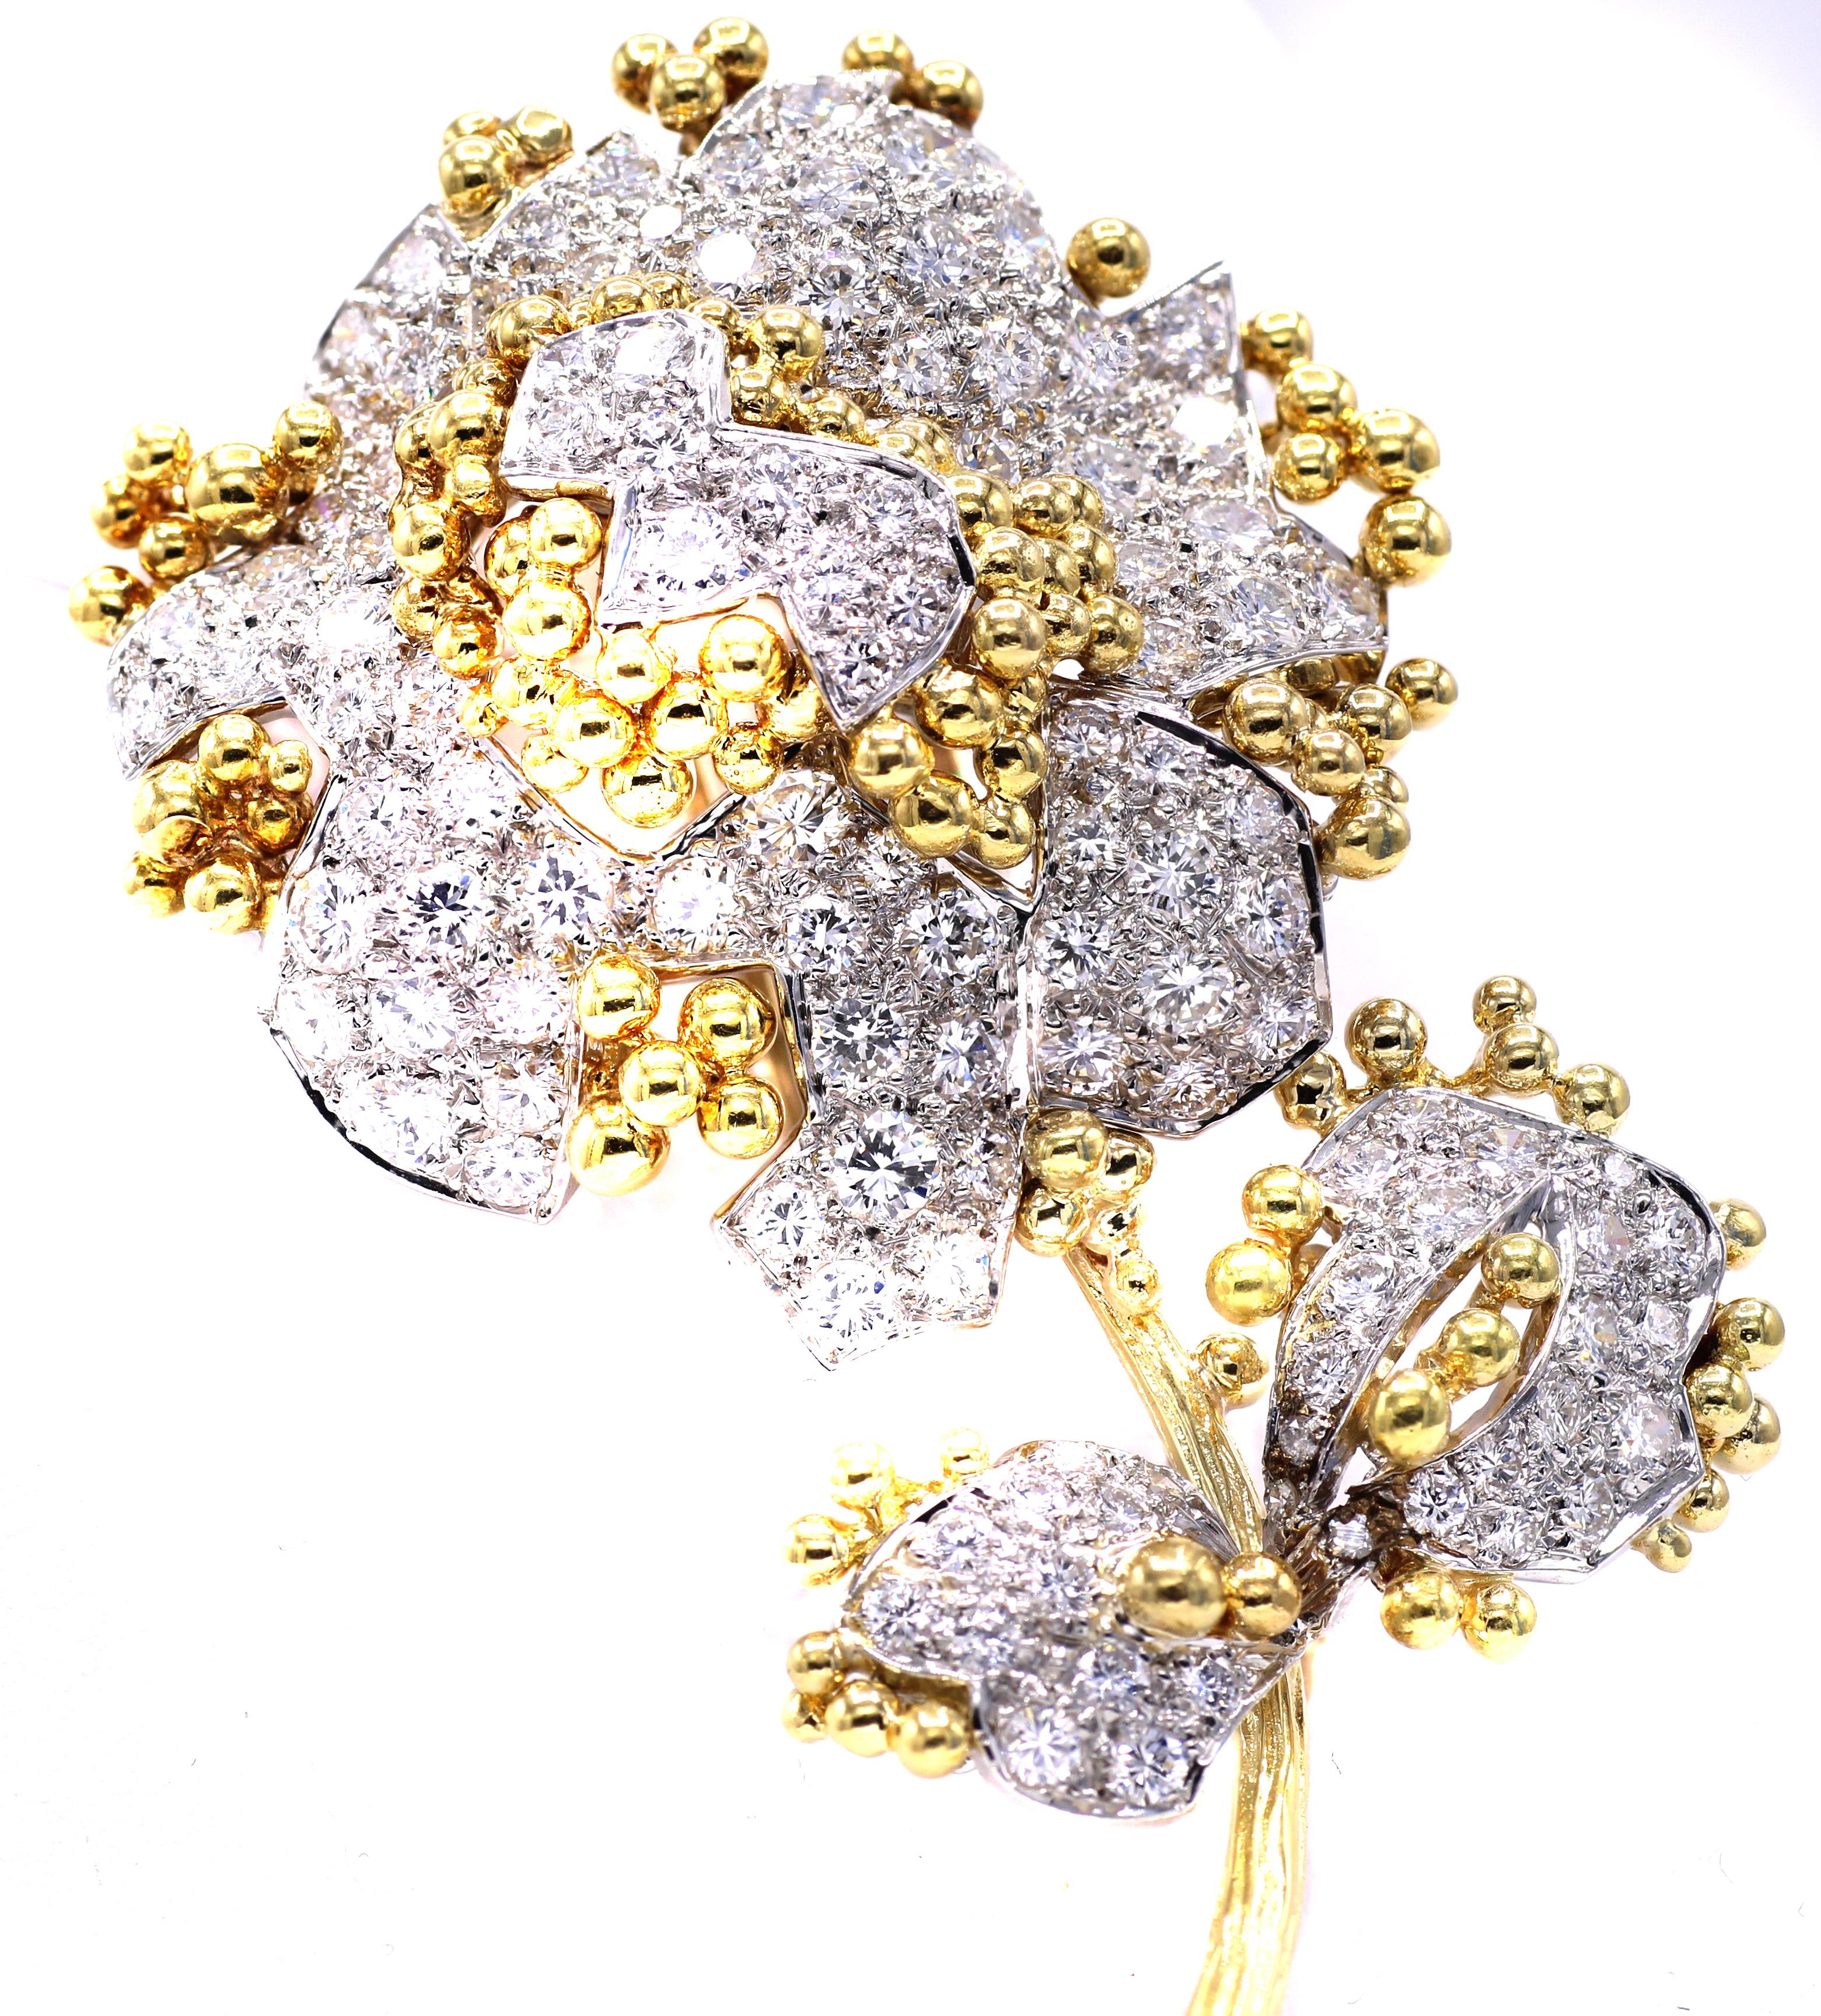 Magnifiquement conçue et fabriquée à la main, cette broche fleur des années 1980 représente de manière réaliste et tridimensionnelle chaque détail des pétales, de la tige et des feuilles. Méticuleusement serti de 112 diamants ronds de taille